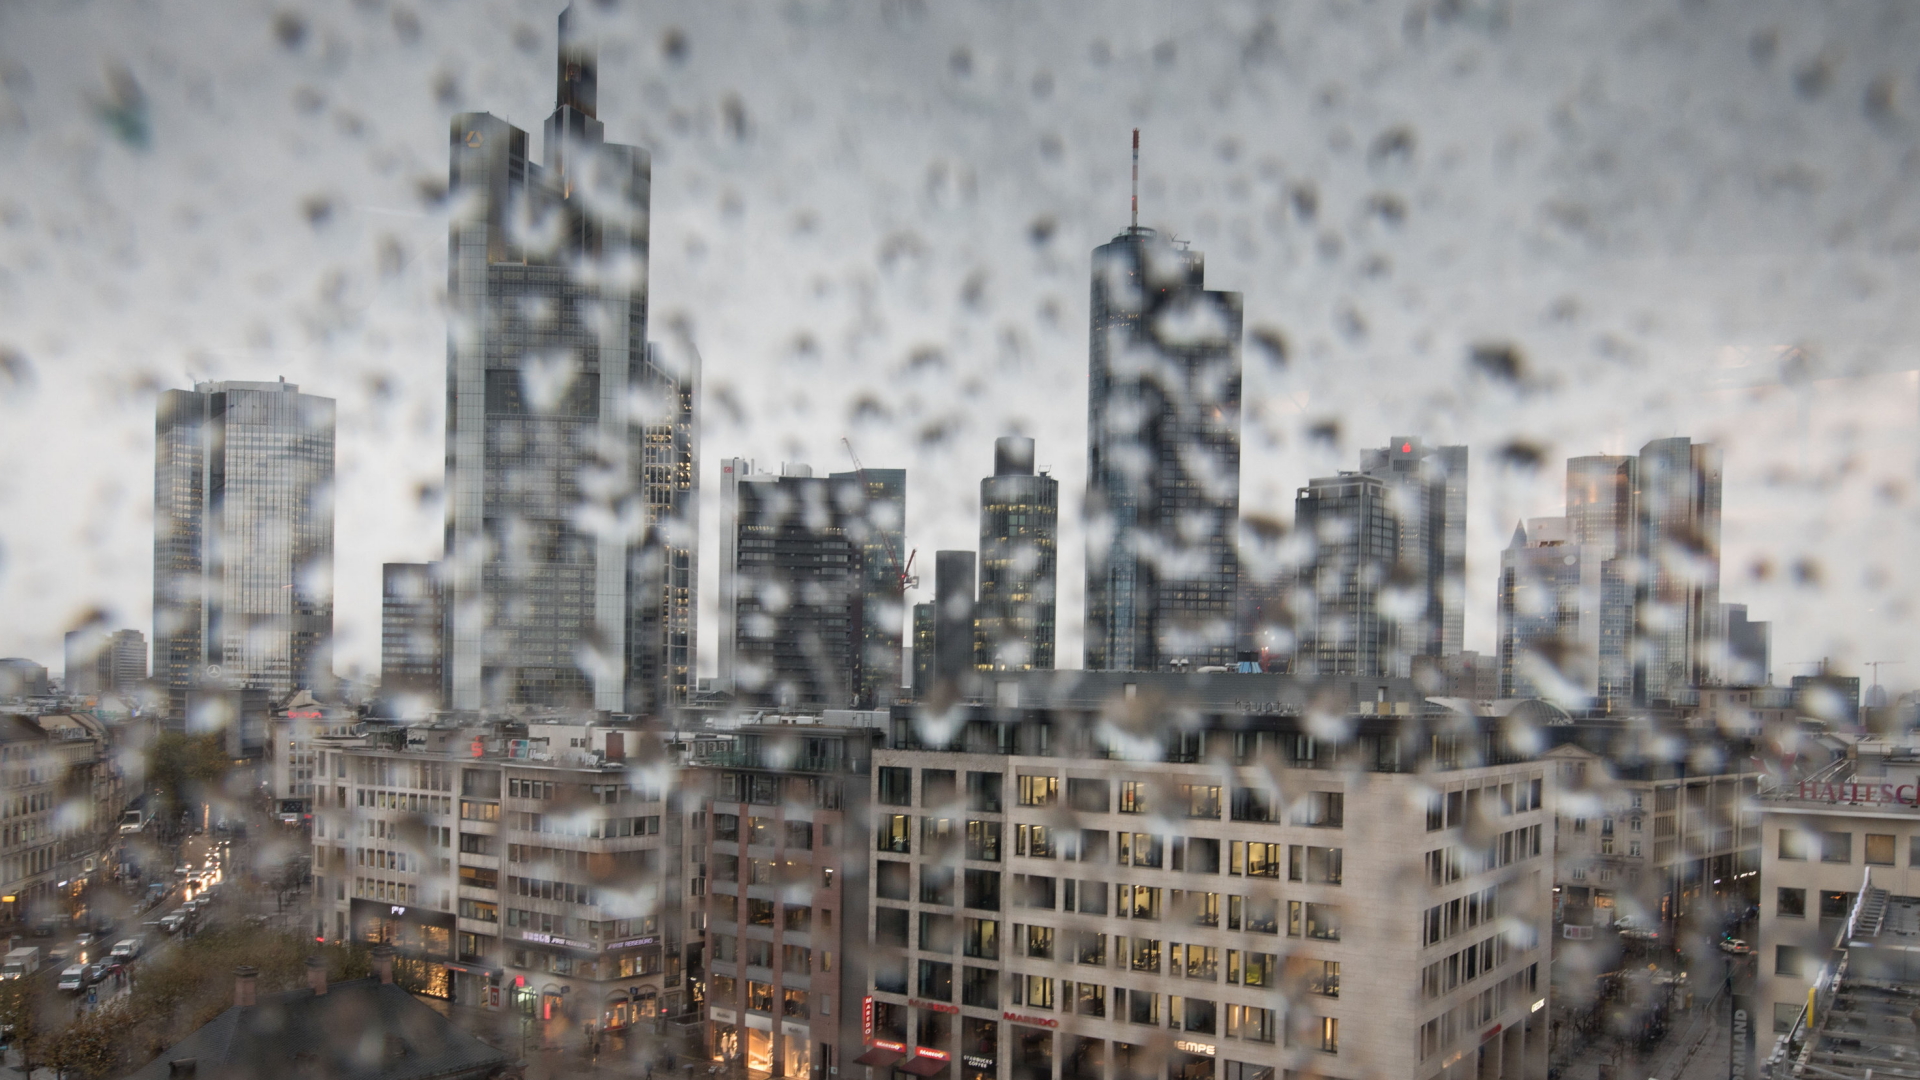 Frankfurt am Main, betrachtet durch eine mit Regentropfen behangene Scheibe